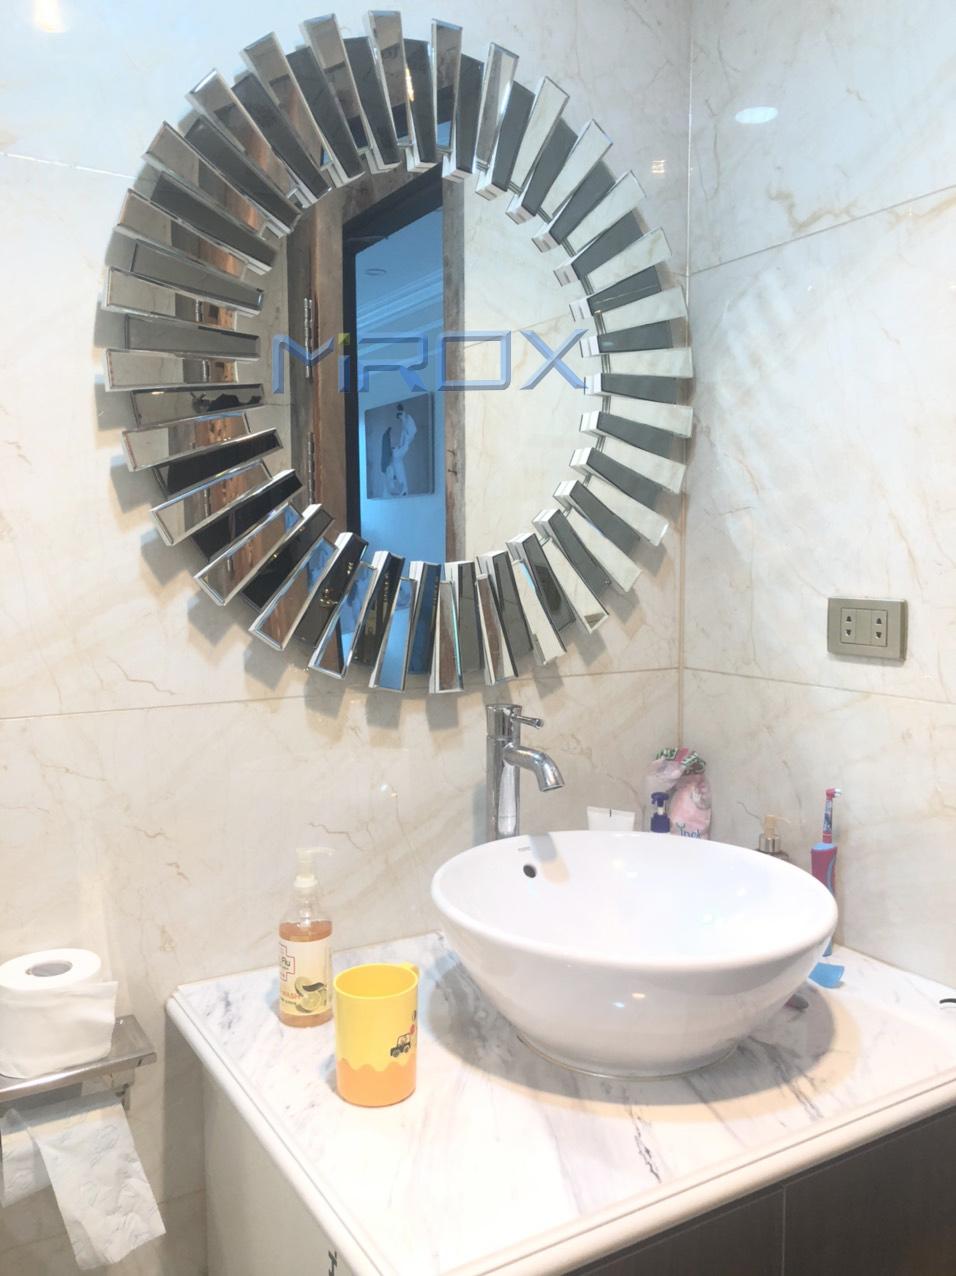 Gương phòng tắm TPHCM: Nếu bạn đang tìm kiếm một sản phẩm gương phòng tắm đẳng cấp, các loại gương phòng tắm TPHCM chắc chắn sẽ là sự lựa chọn hoàn hảo cho bạn. Với sự đa dạng về kiểu dáng, chất liệu và kích thước, chúng tôi sẽ giúp khách hàng tìm kiếm được sản phẩm phù hợp với yêu cầu của mình. Sản phẩm của chúng tôi đảm bảo chất lượng tốt nhất và an toàn cho người sử dụng.